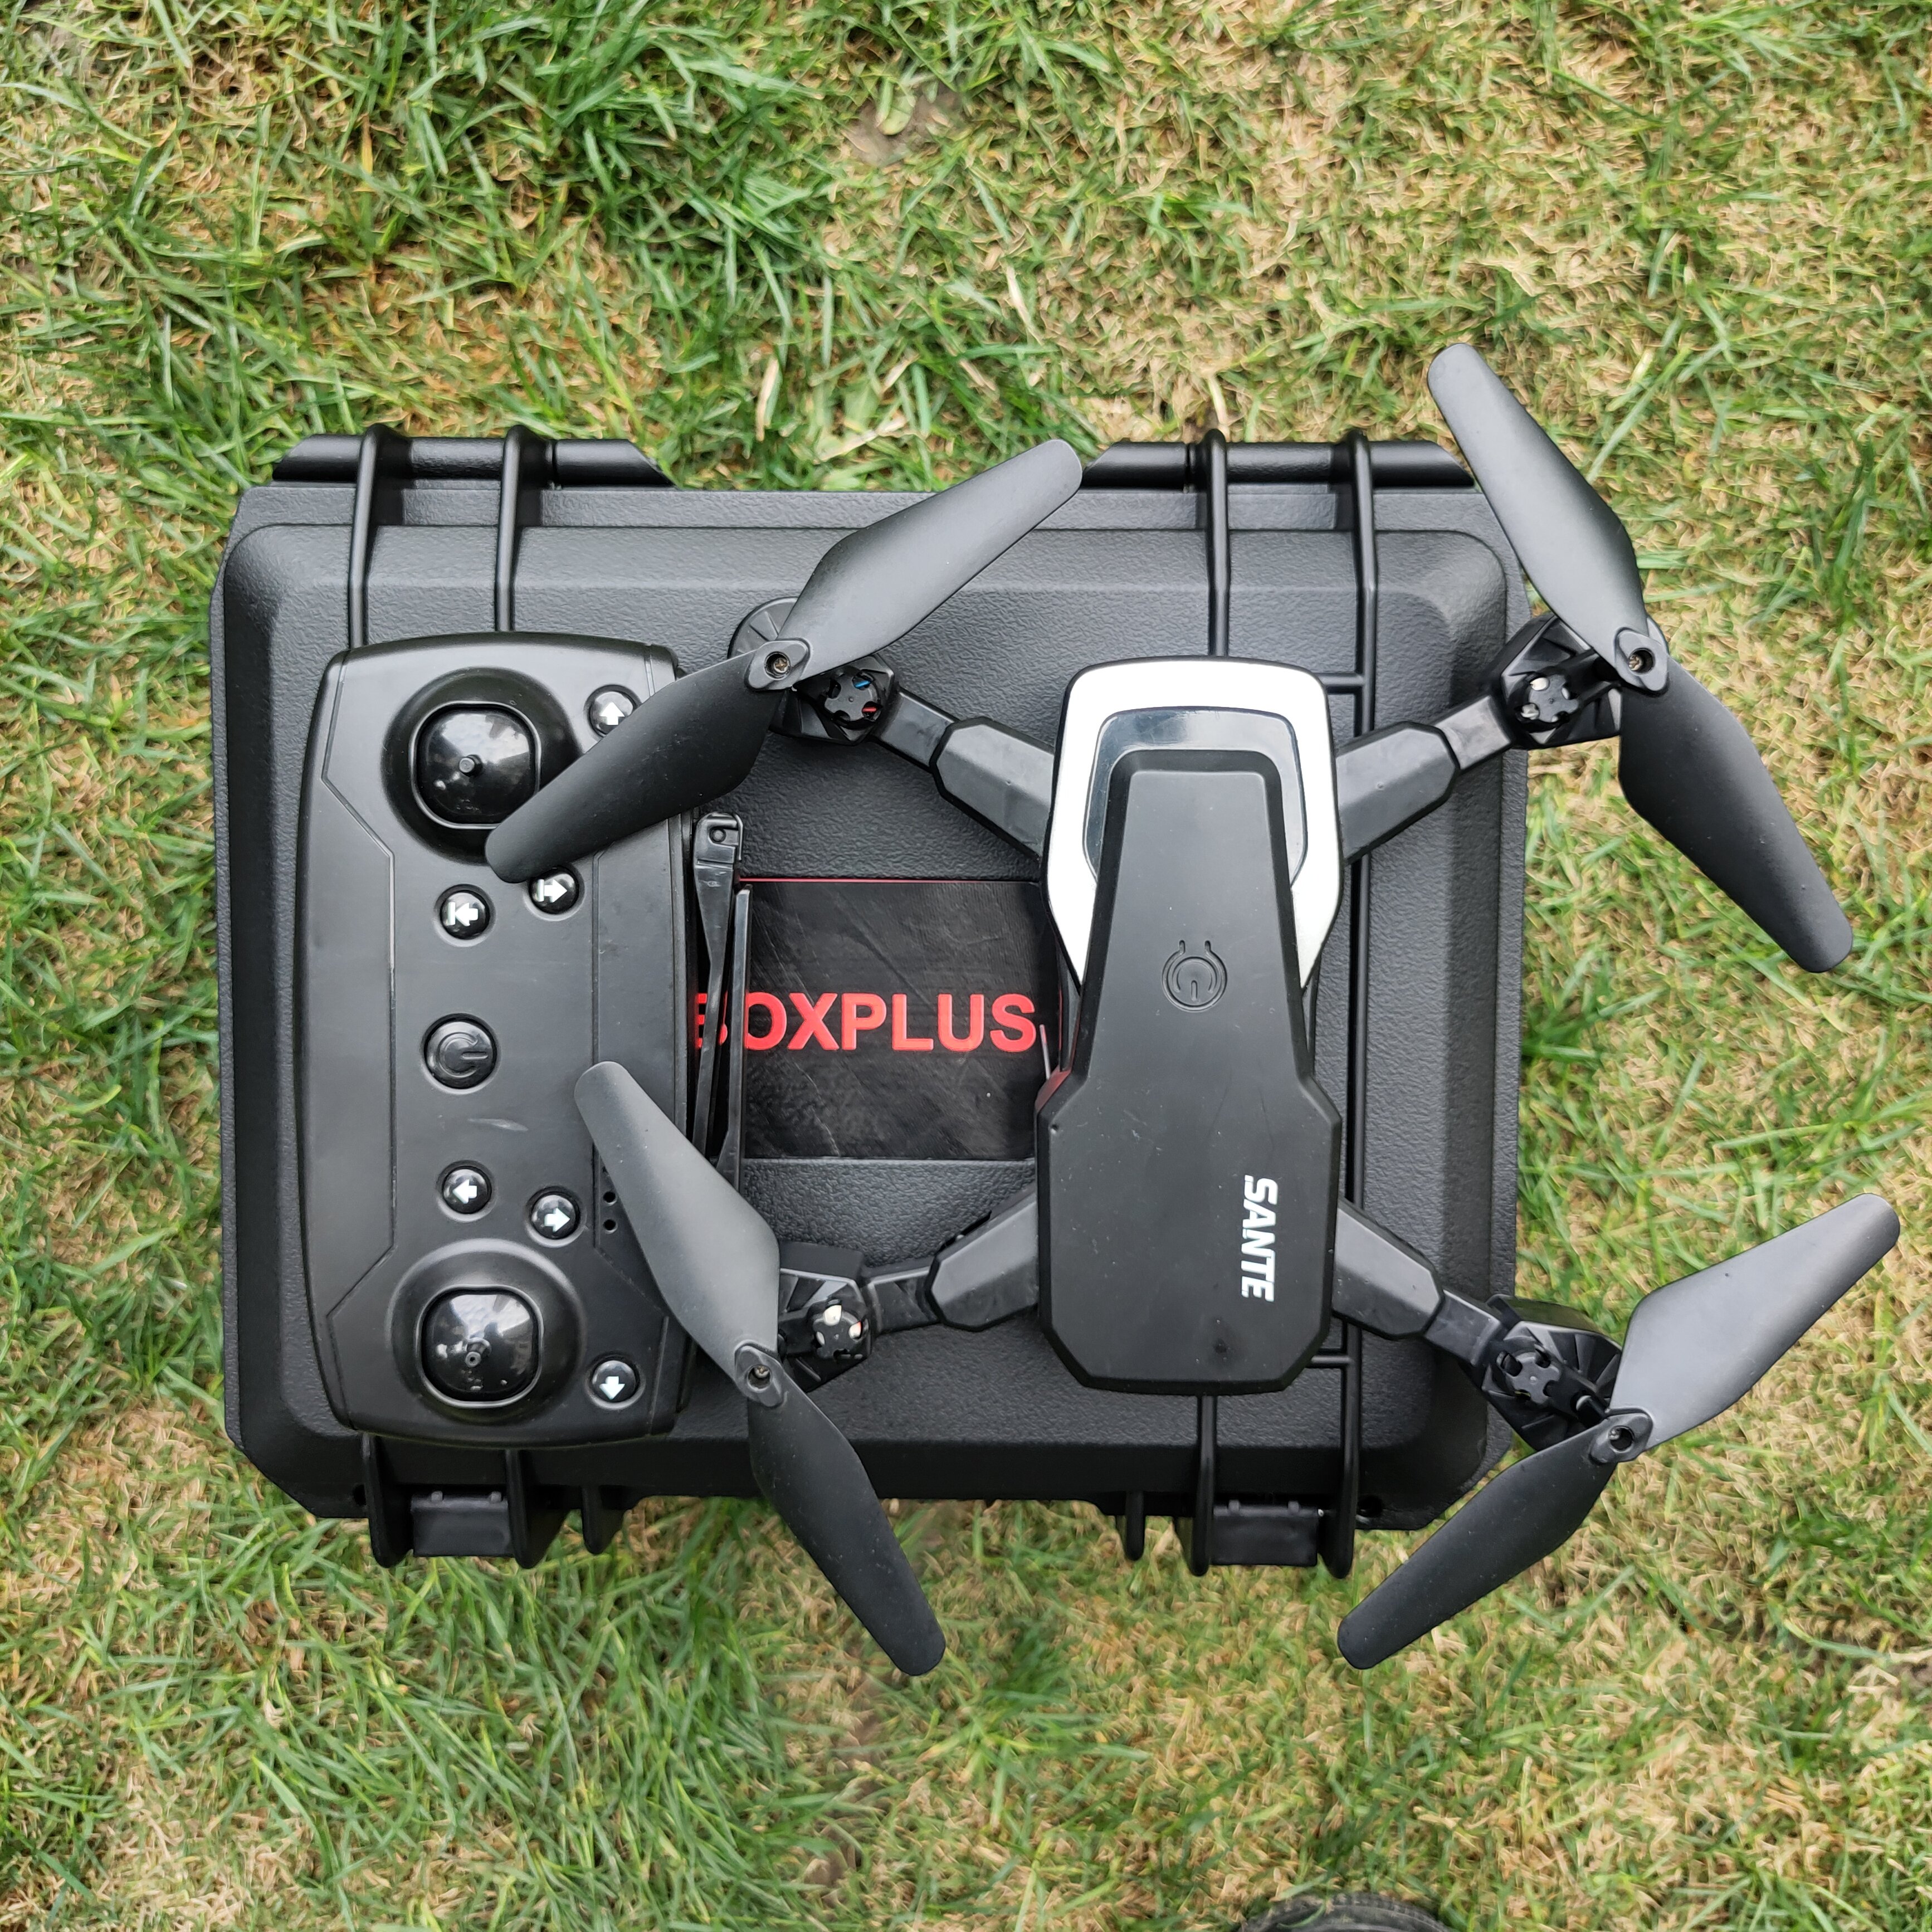 [BP-F2519][251*180*155mm]Hard Shell Waterproof Plastic Camera Case Dji Drone Carrying Case Waterproof Hard Plastic Case with Foam